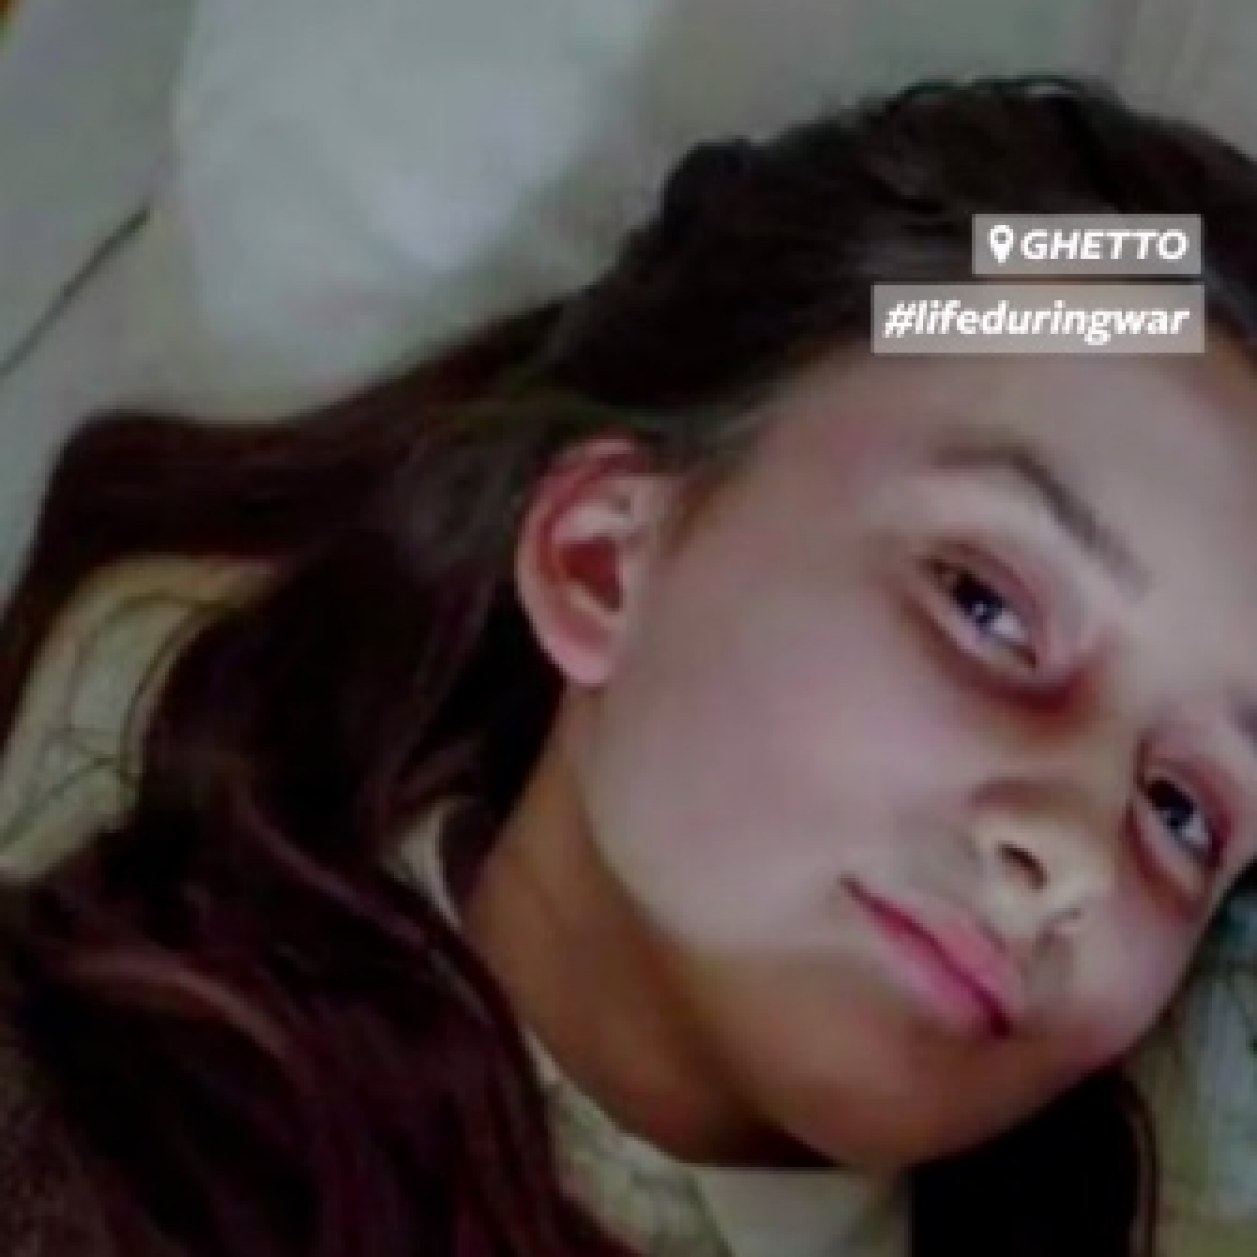 Ce compte Instagram retrace la vie d'une adolescente victime de la Shoah en stories